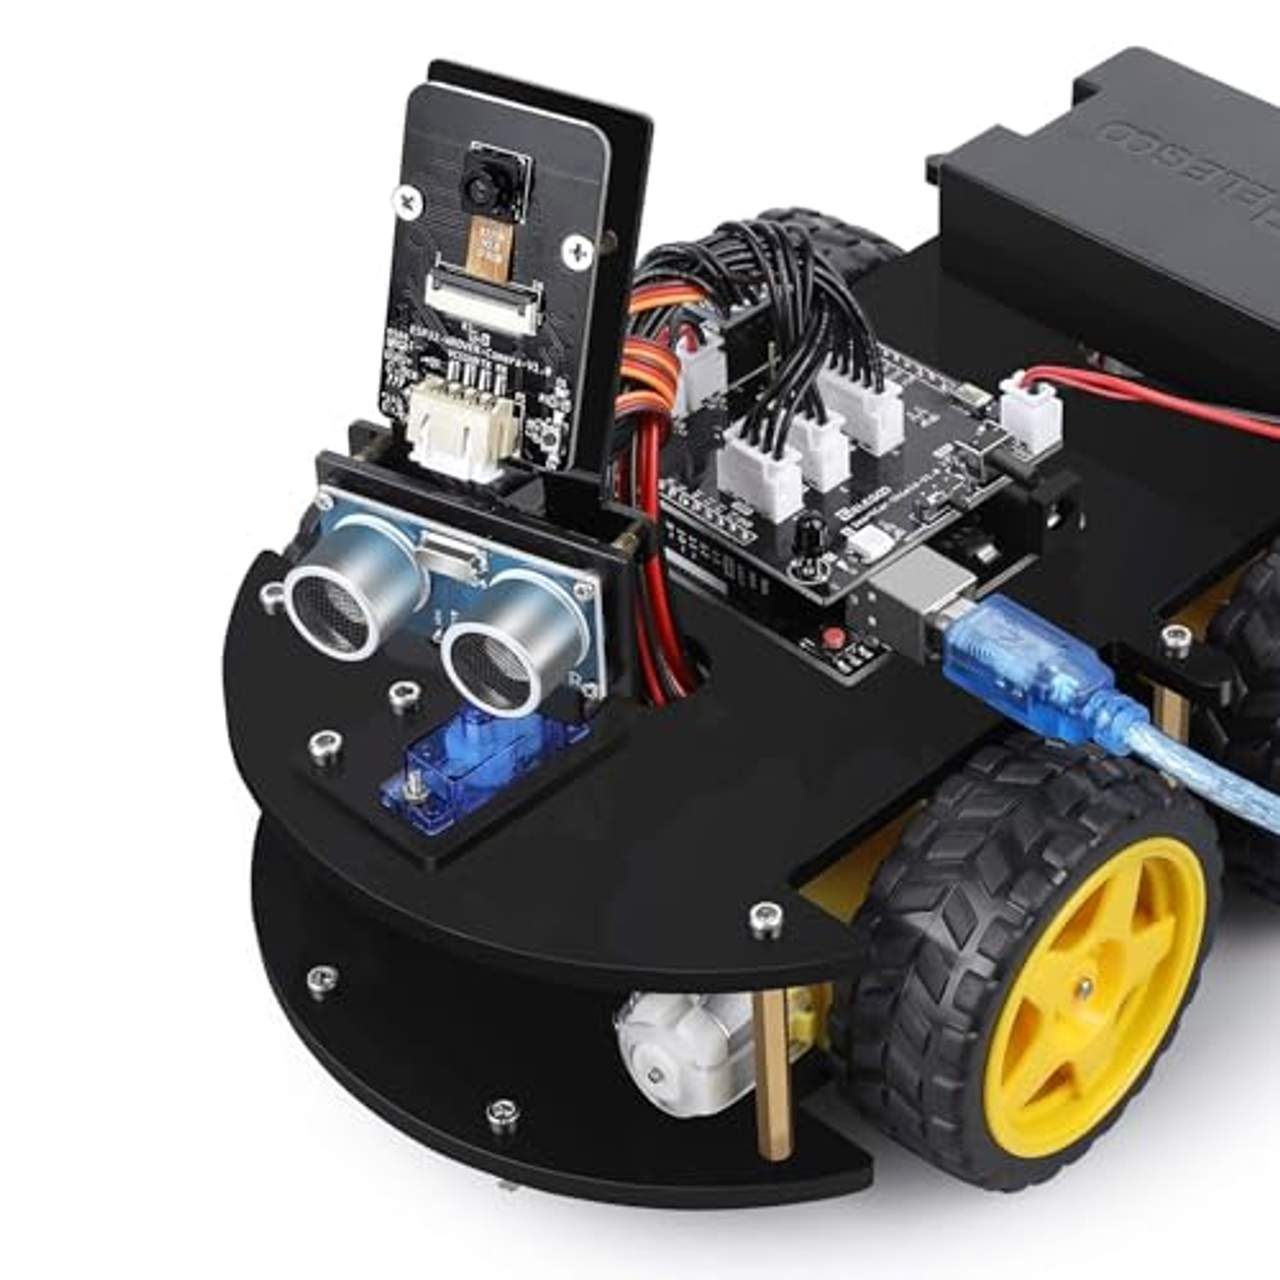 ELEGOO Smart Robot Car Kit V4.0 Kompatibel